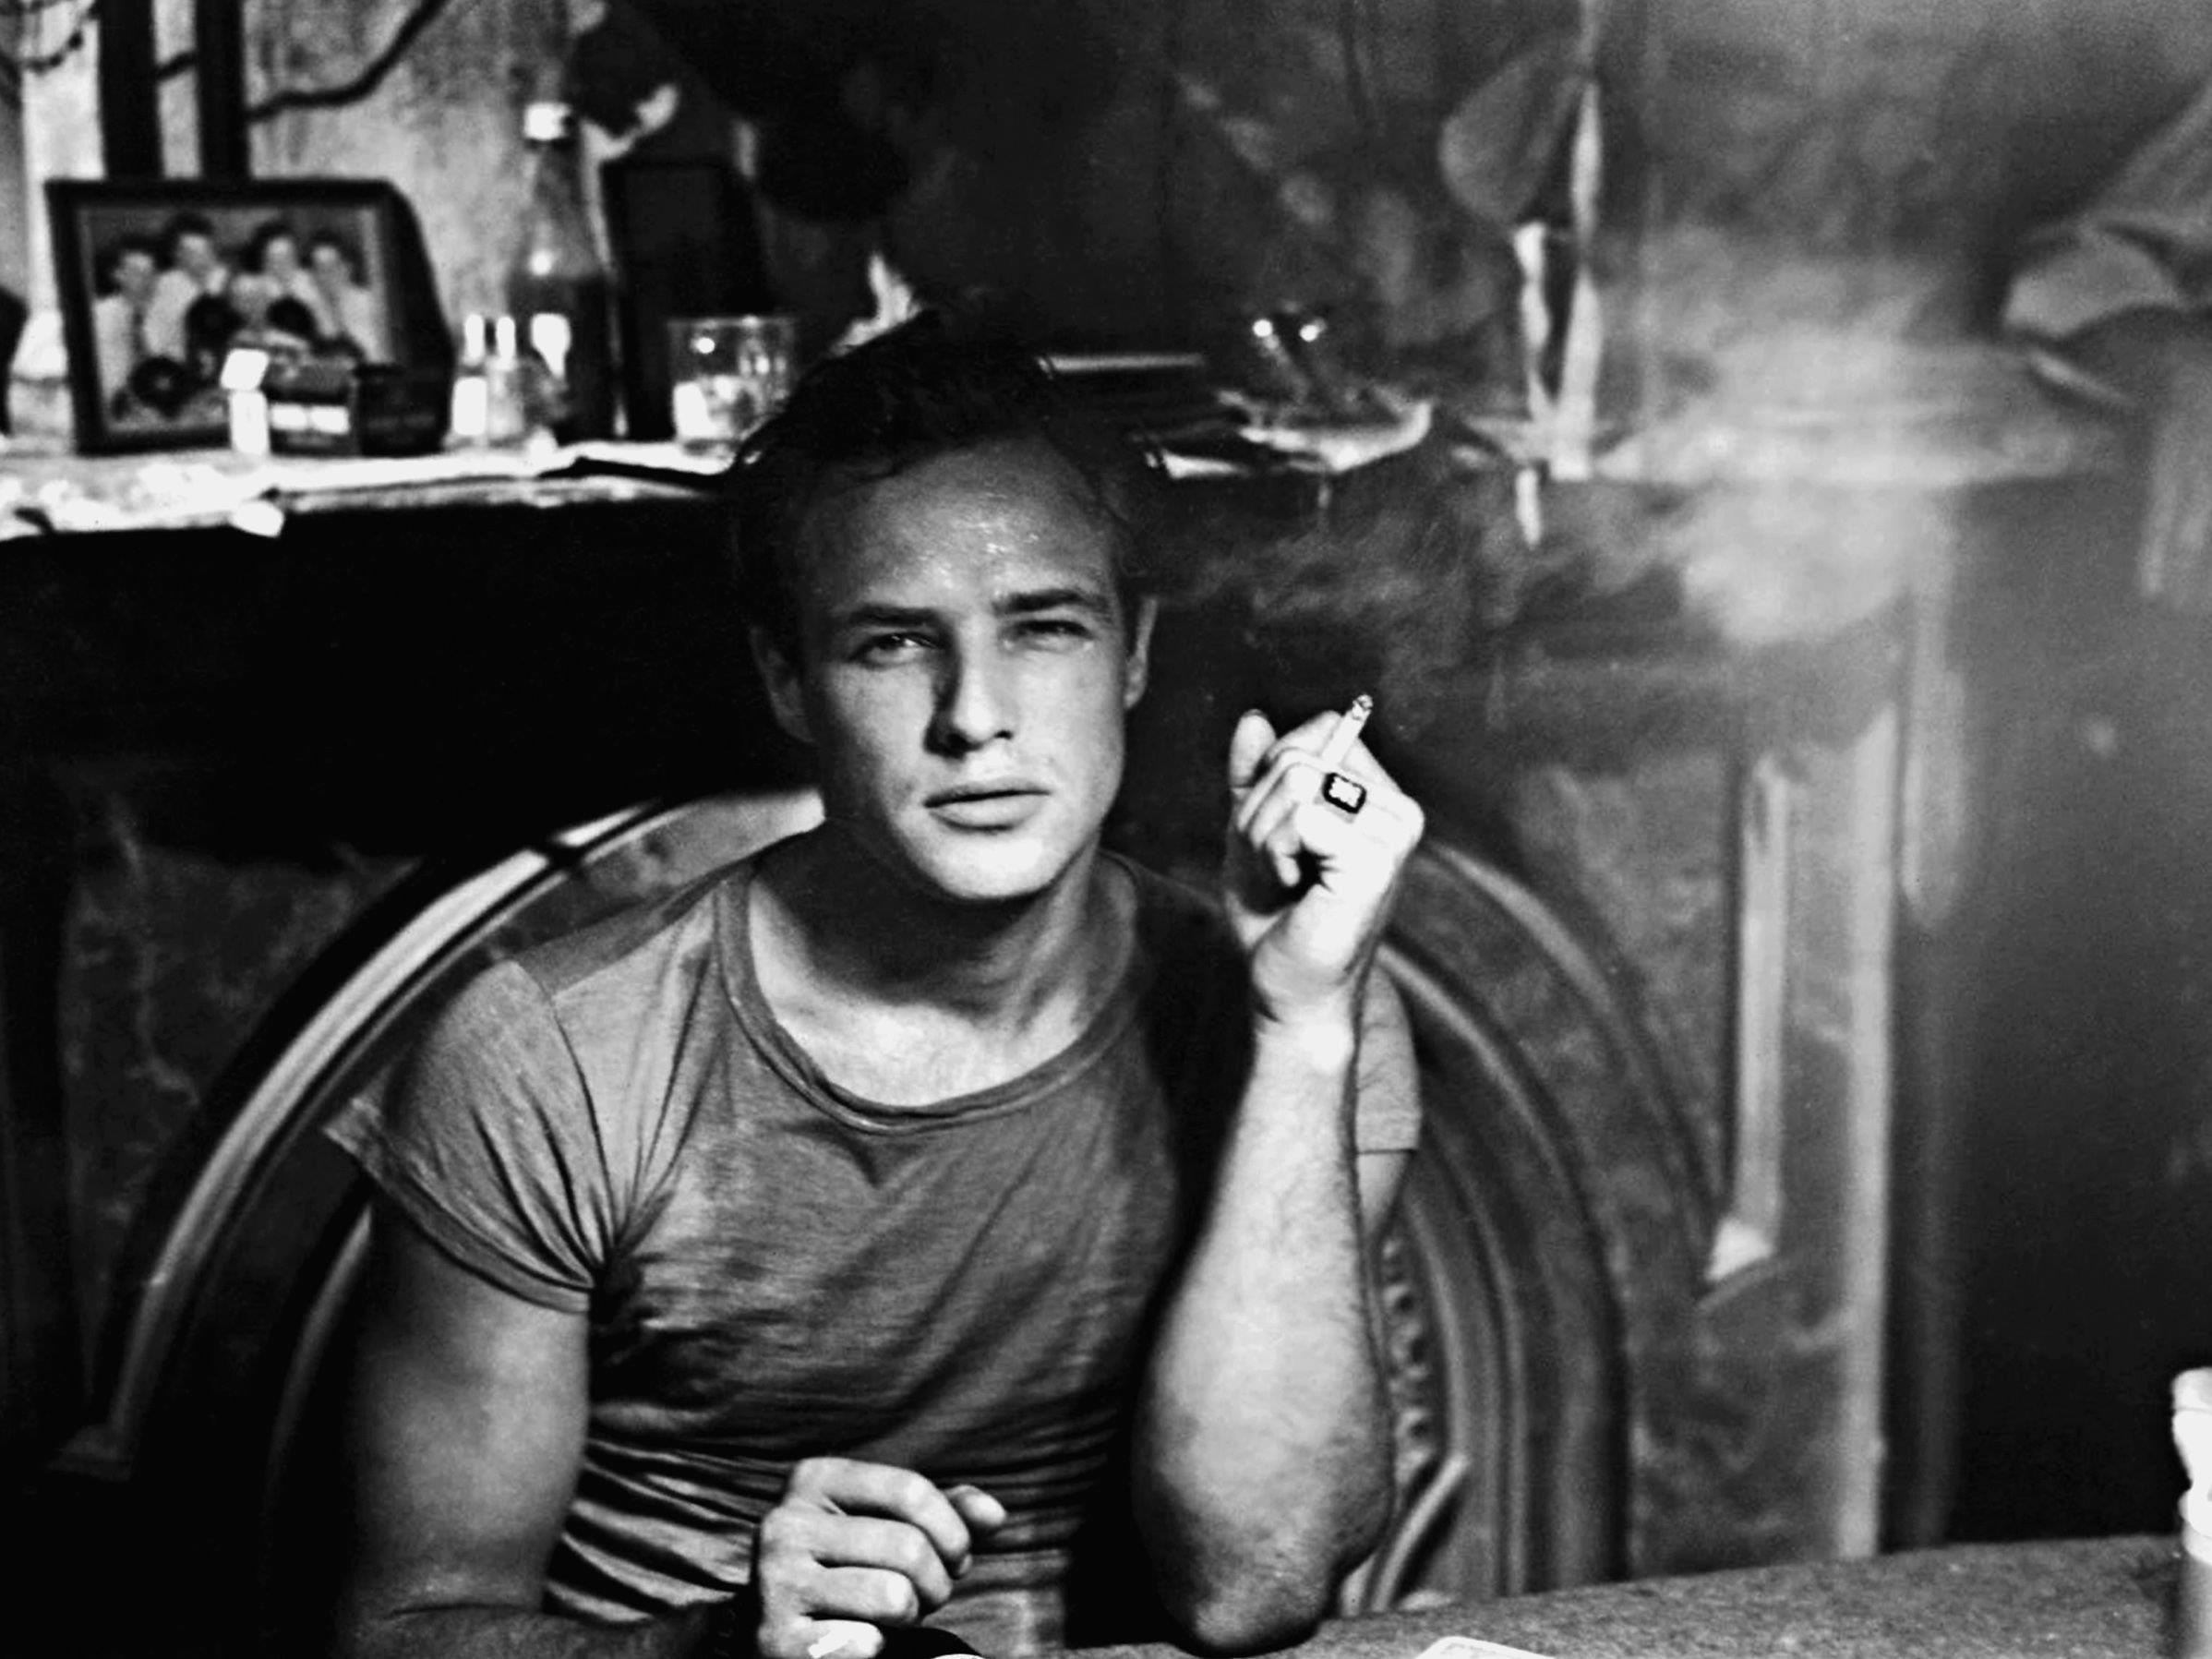 Die Dokumentarschiene der V'16 bietet auch Interessantes zu Marlon Brando